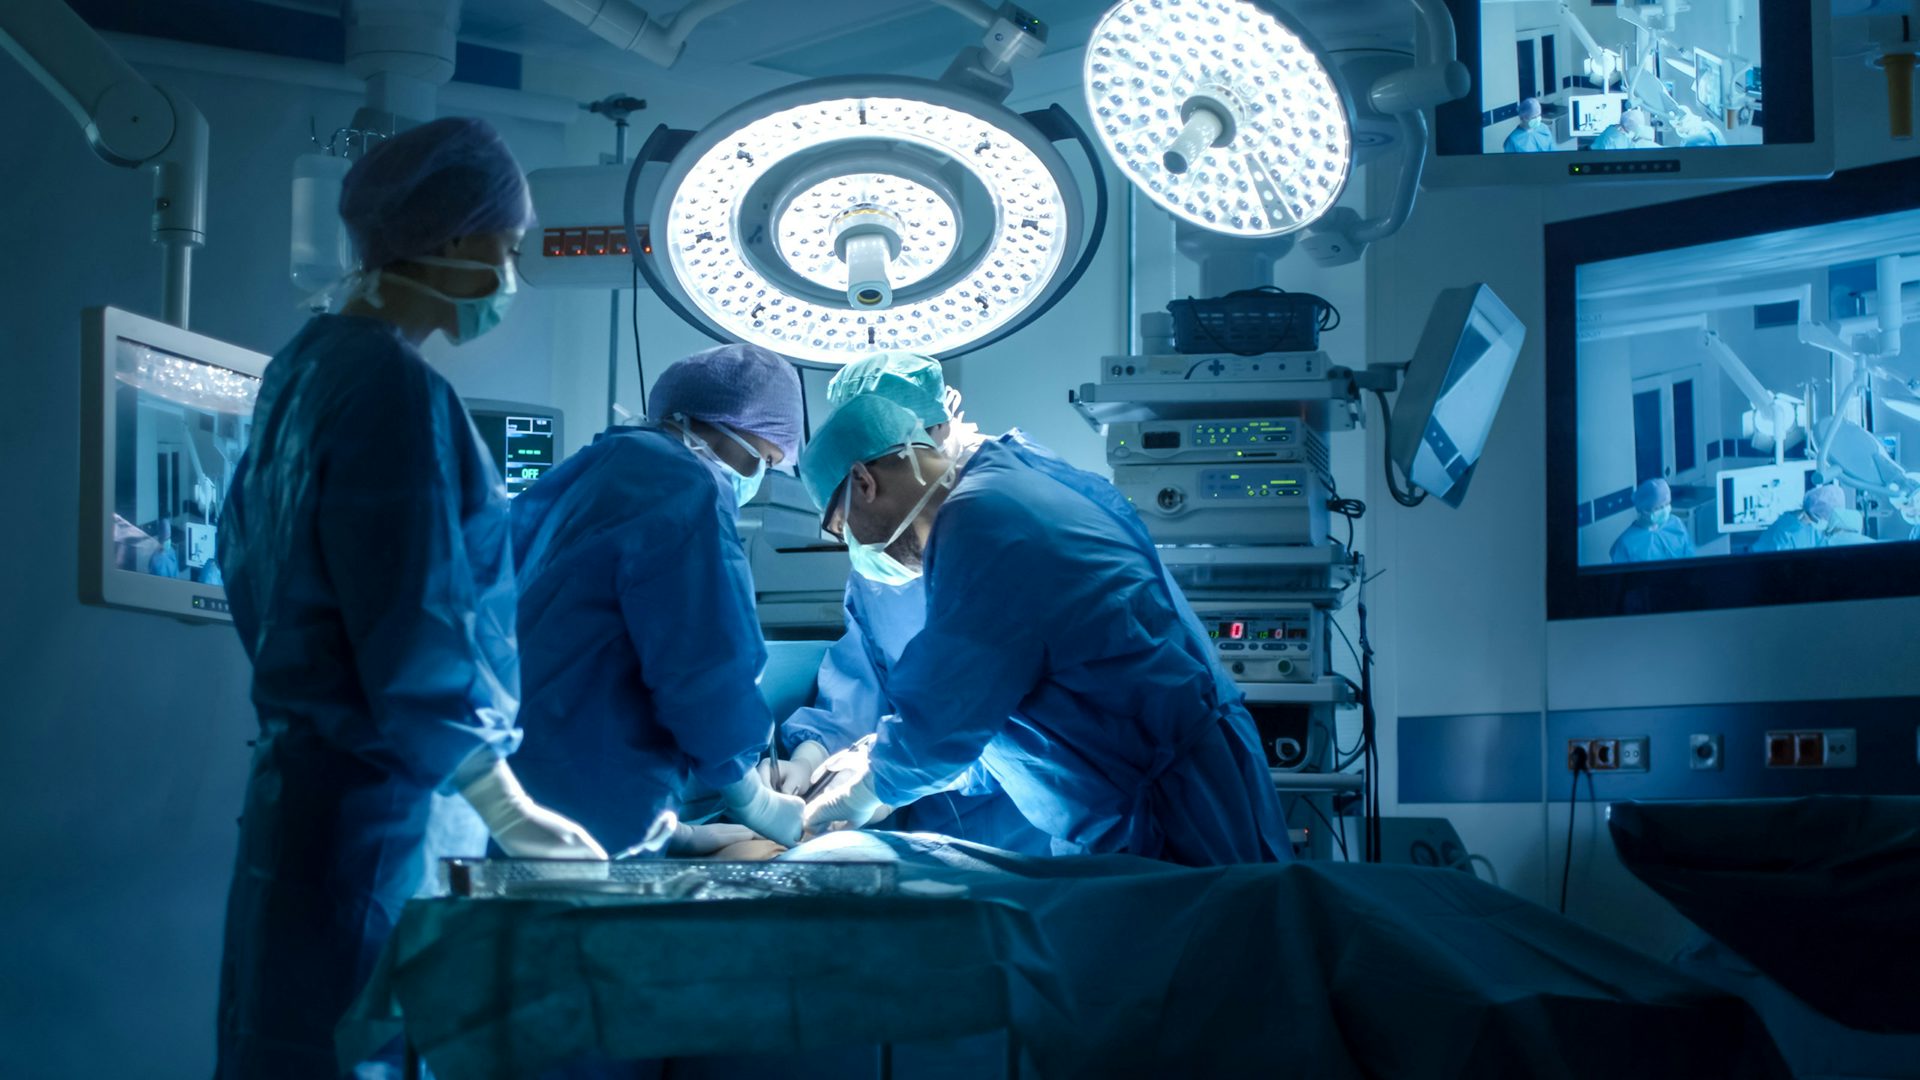 Chirurgiens pratiquant une intervention chirurgicale dans une salle d’opération : Une équipe de chirurgiens qualifiés effectuant une procédure médicale dans une salle d’opération stérile.